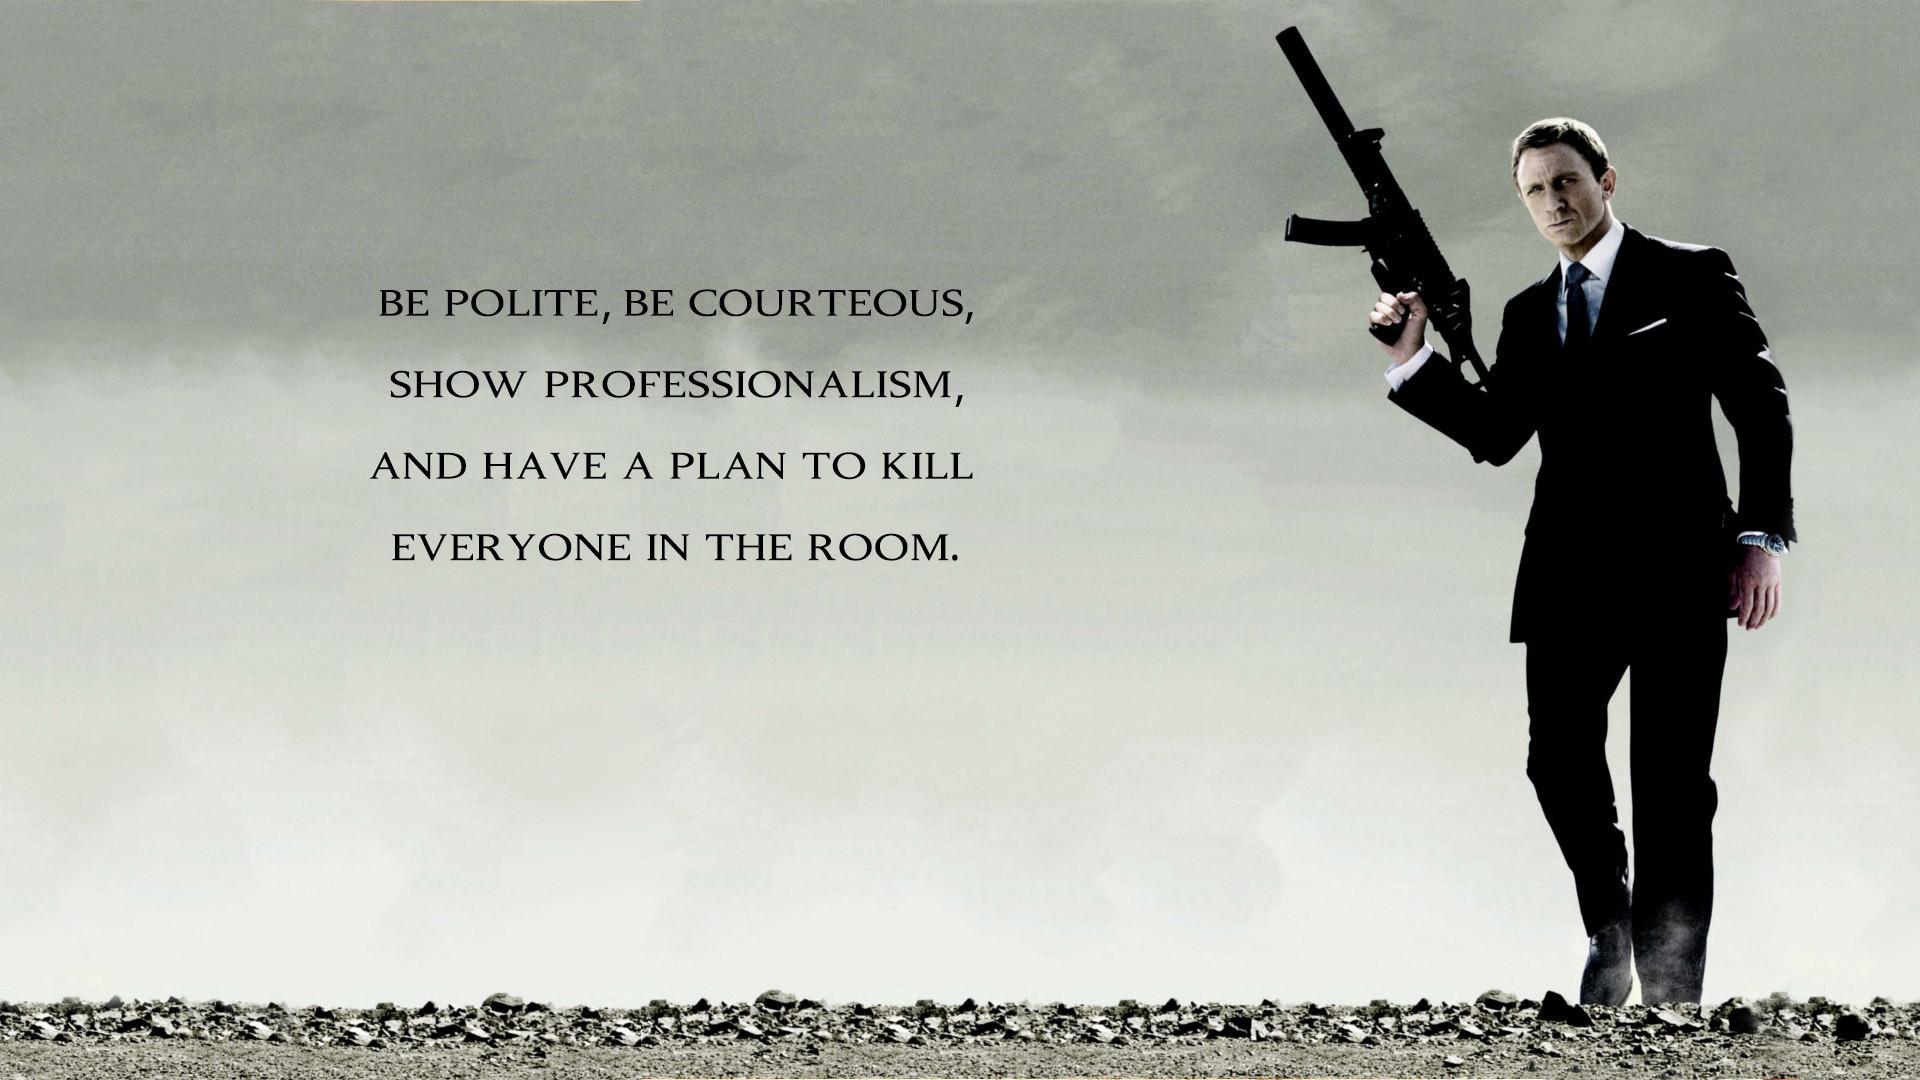 Hd James Bond Quotes Hd Wallpaper - James Bond Daniel Craig Poster - HD Wallpaper 